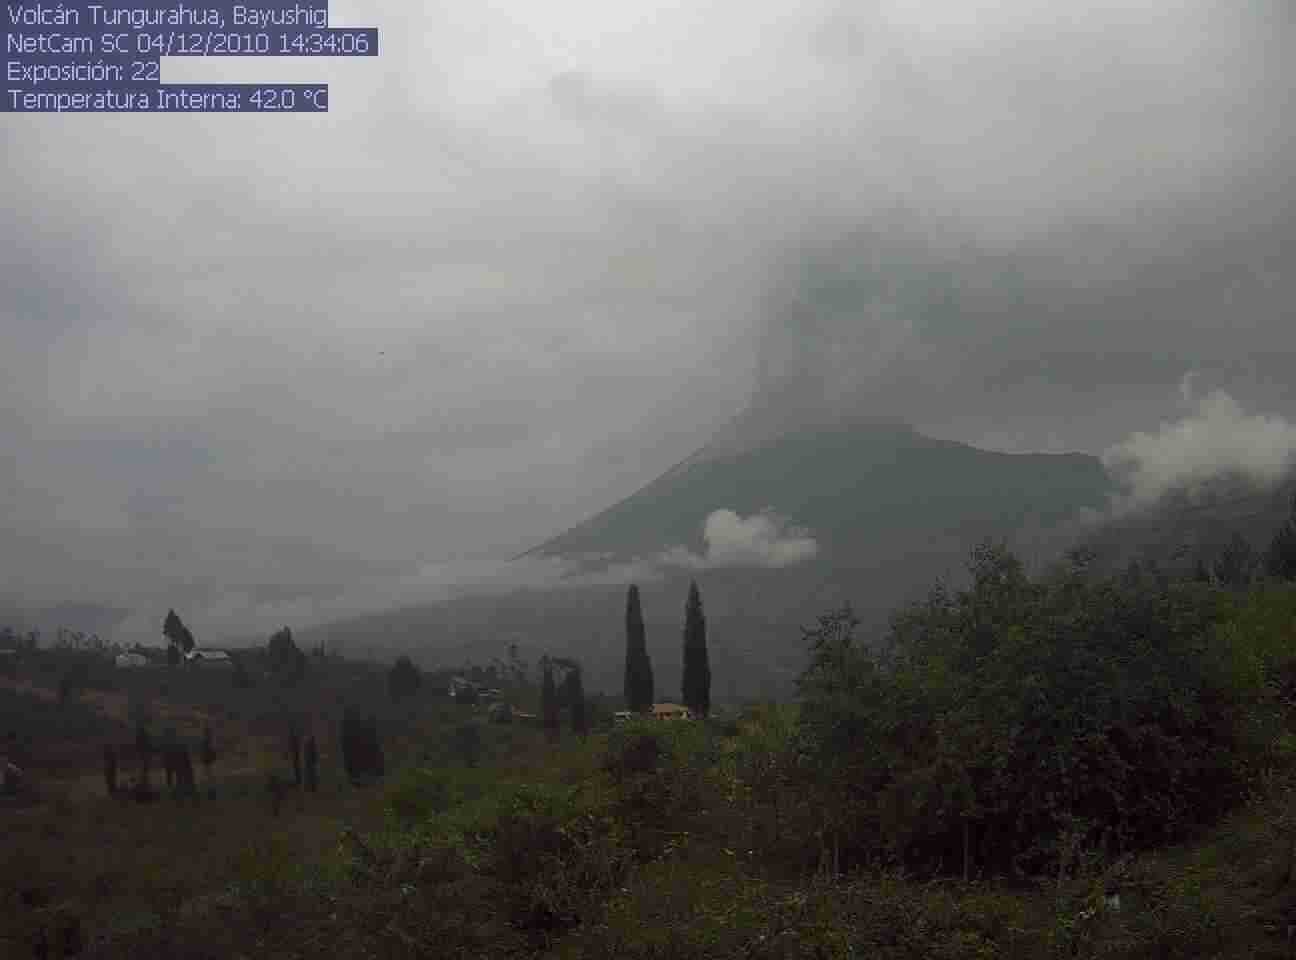 Actividad superficial observada en el volcán Tungurahua. Imagen captada por  la cámara de monitoreo ubicado en la zona de Bayushig, suroeste del volcán, a las 10:50 (tiempo local) del 4  de diciembre de 2010